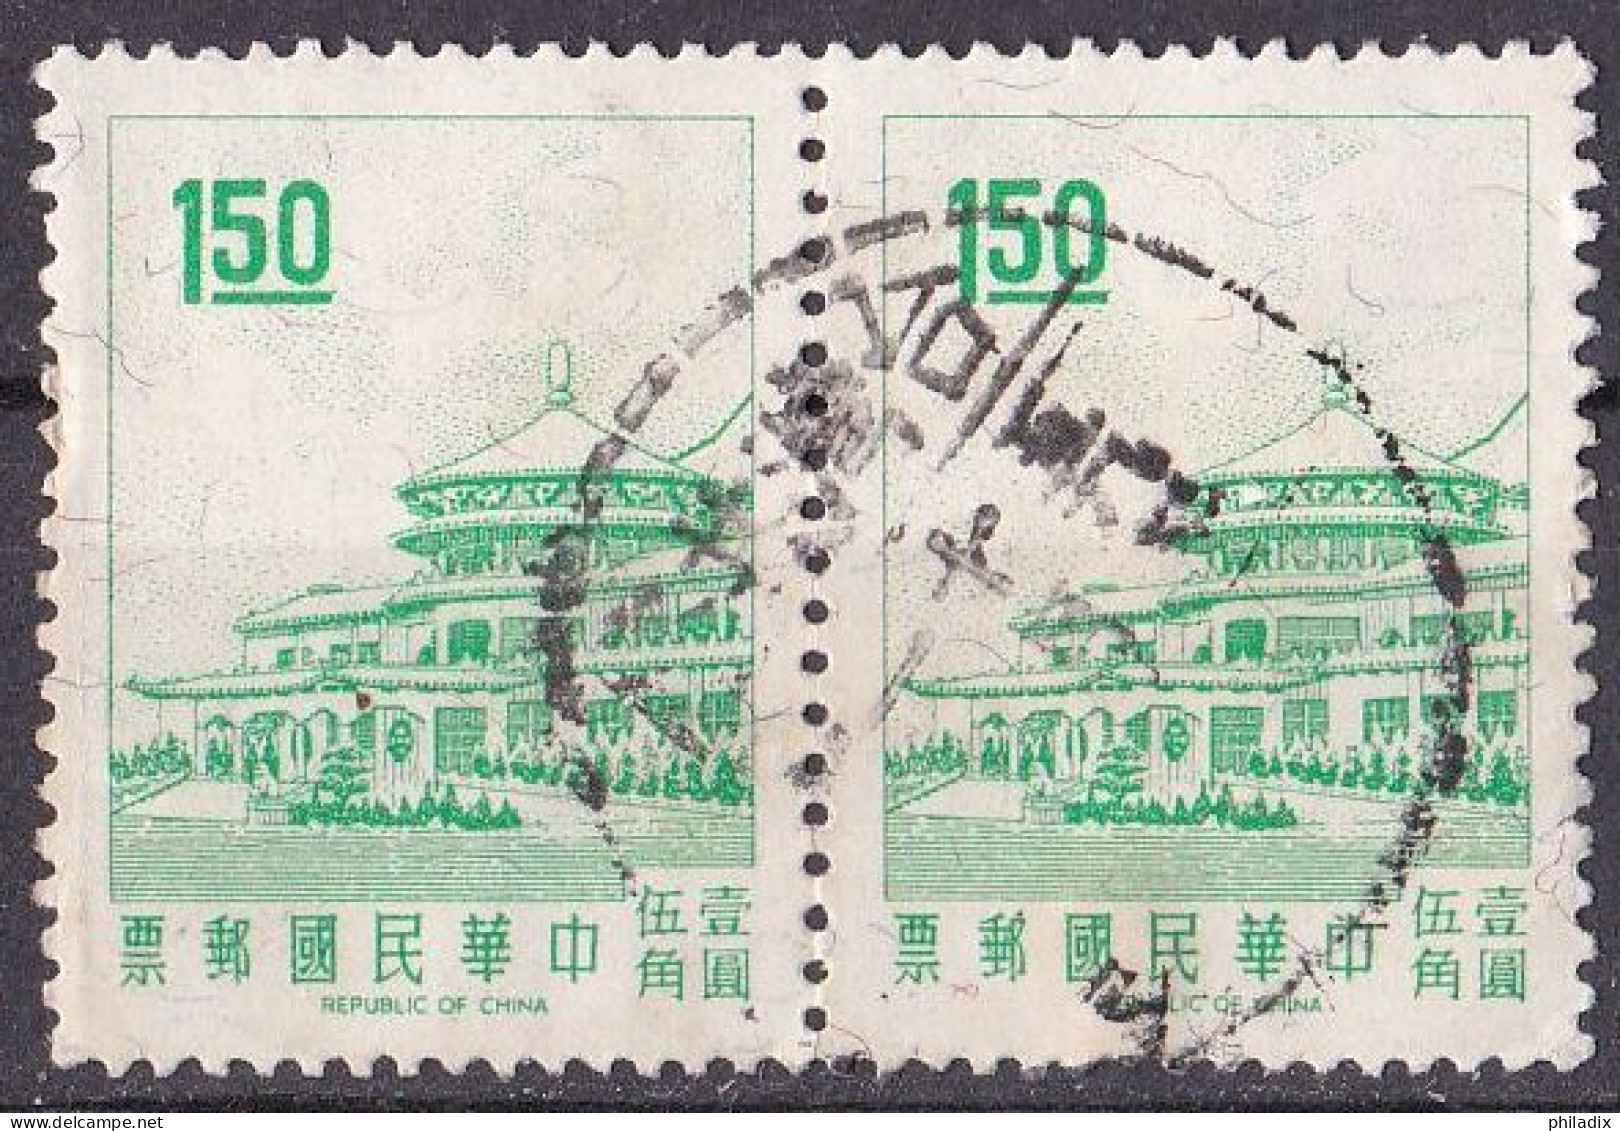 Taiwan Marke Von 1968 O/used (A5-17) - Gebraucht